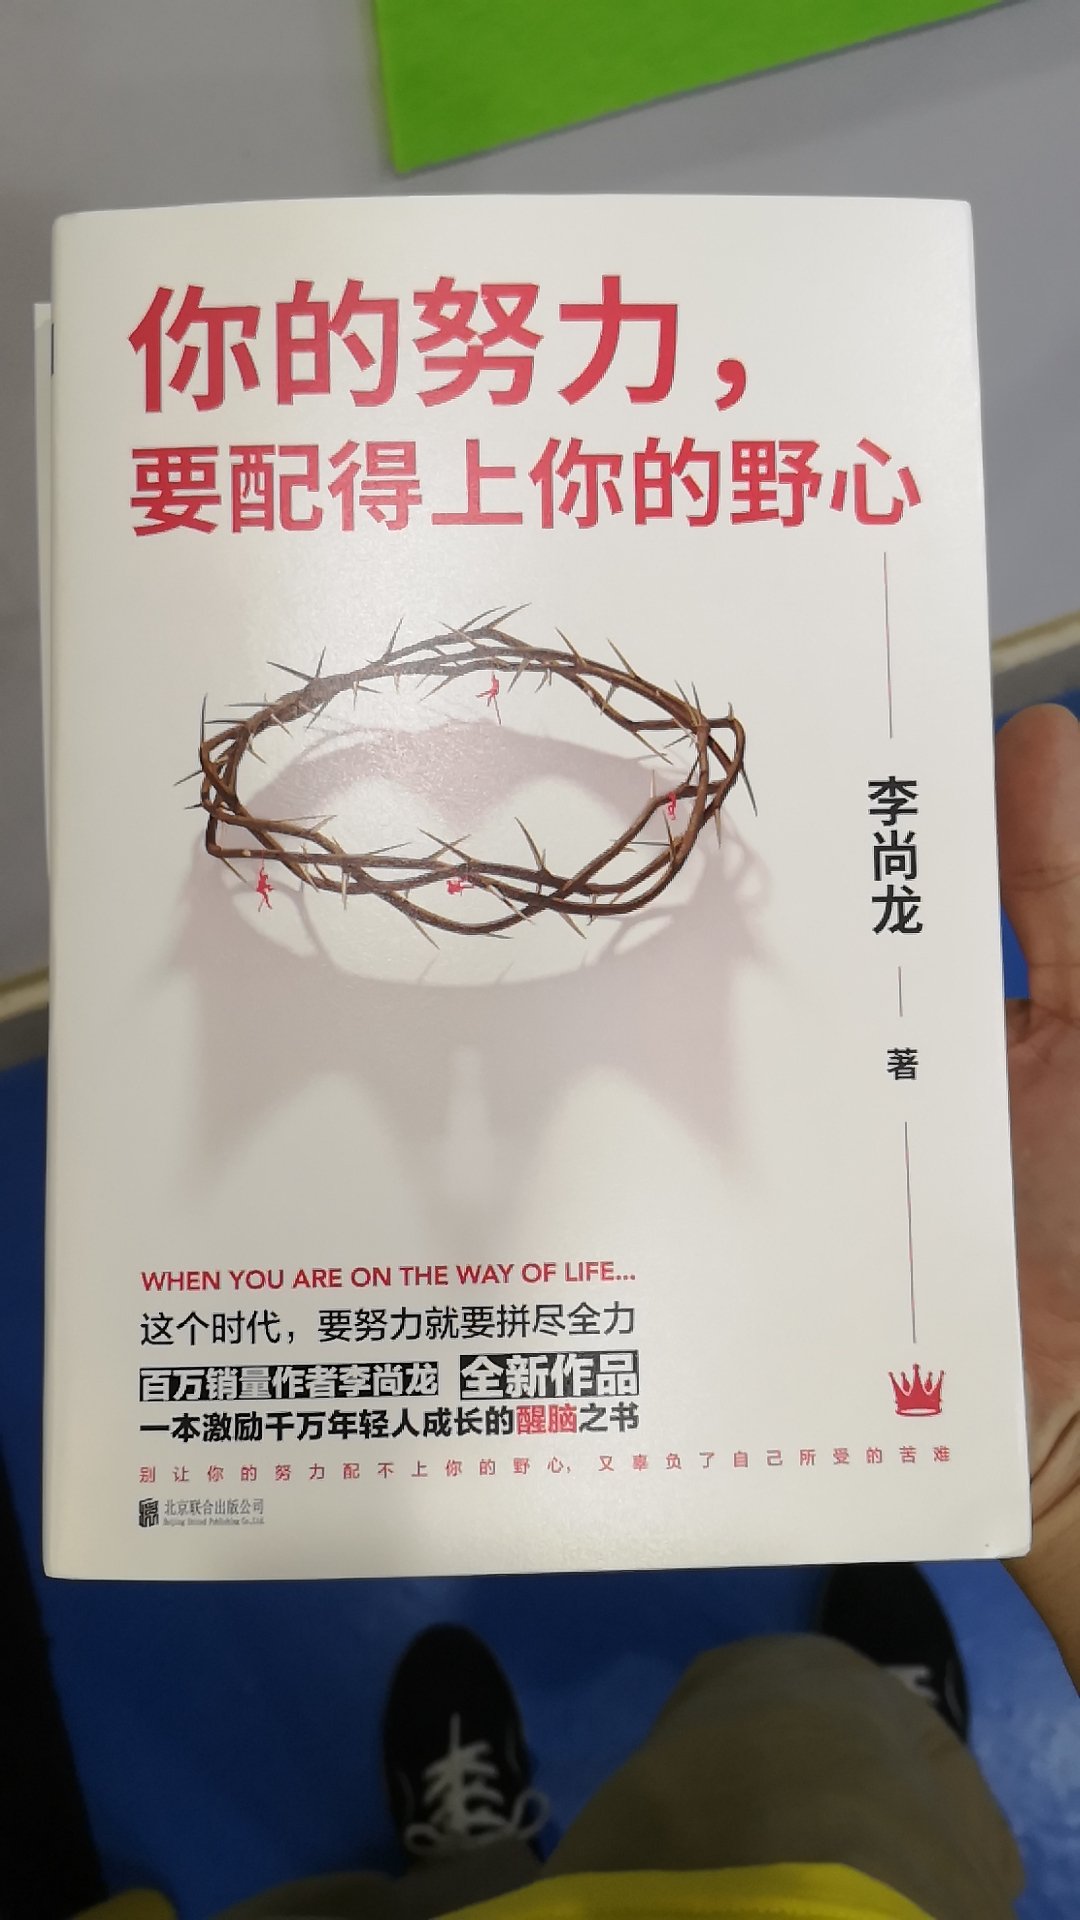 尚龙老师的作品一直能带给人极大的能量。新书当然要支持。特别是他对于校园暴力的发声与付出，值得去尊重。